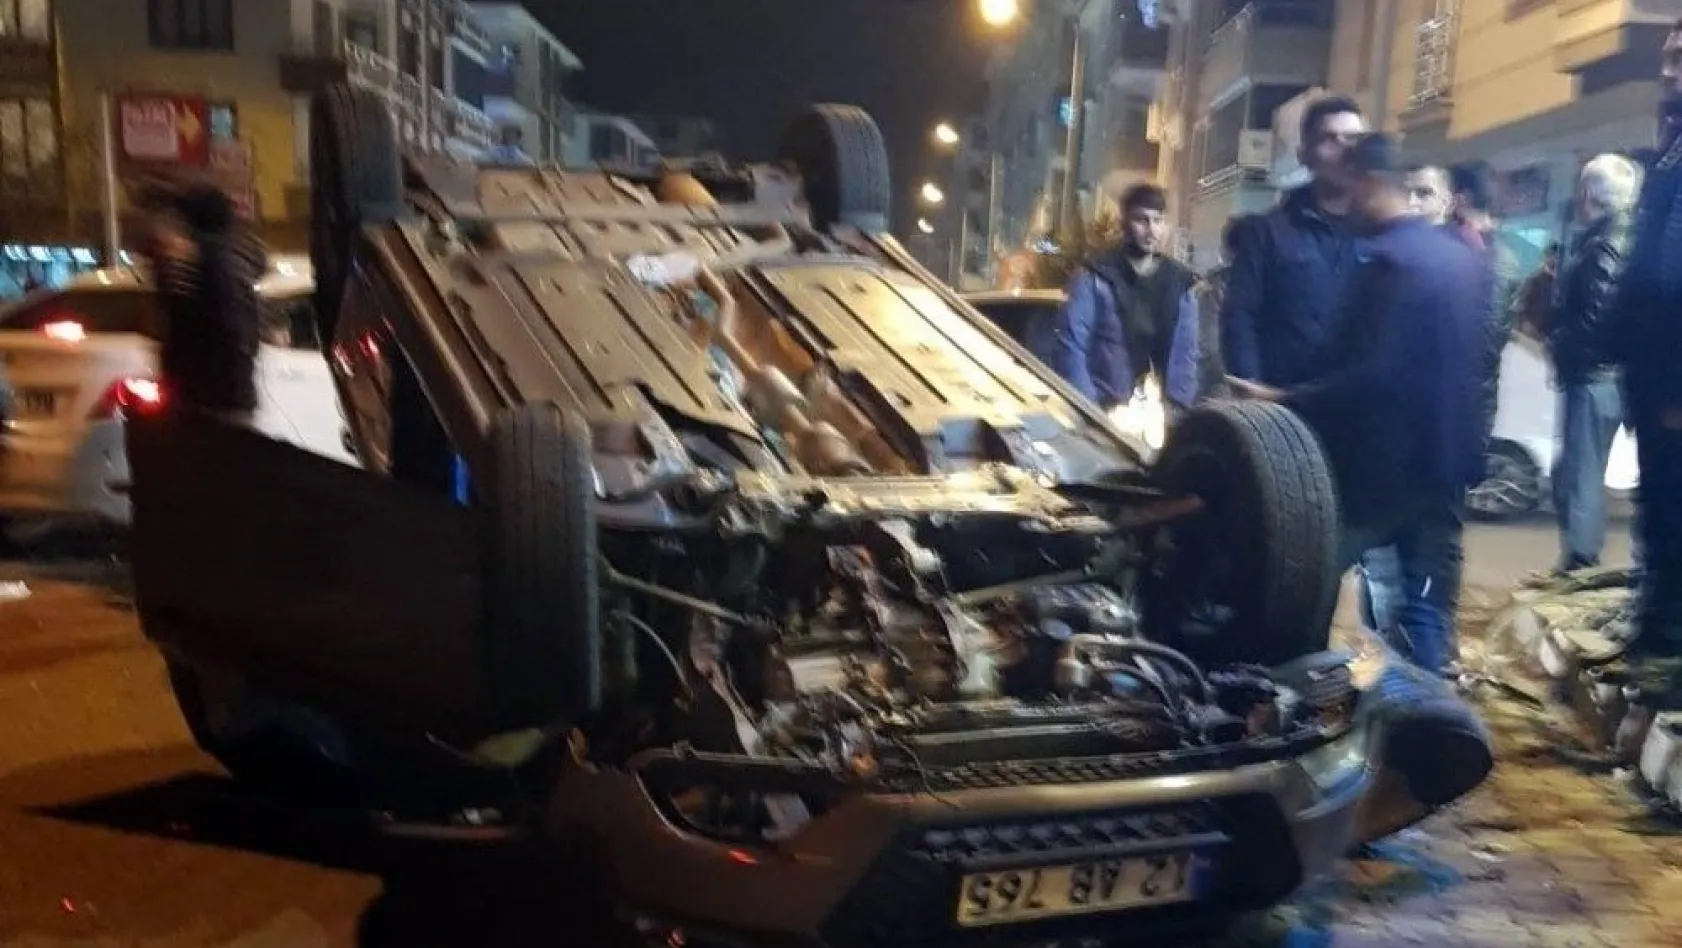 Bingöl'de iki ayrı trafik kazası: 9 yaralı
